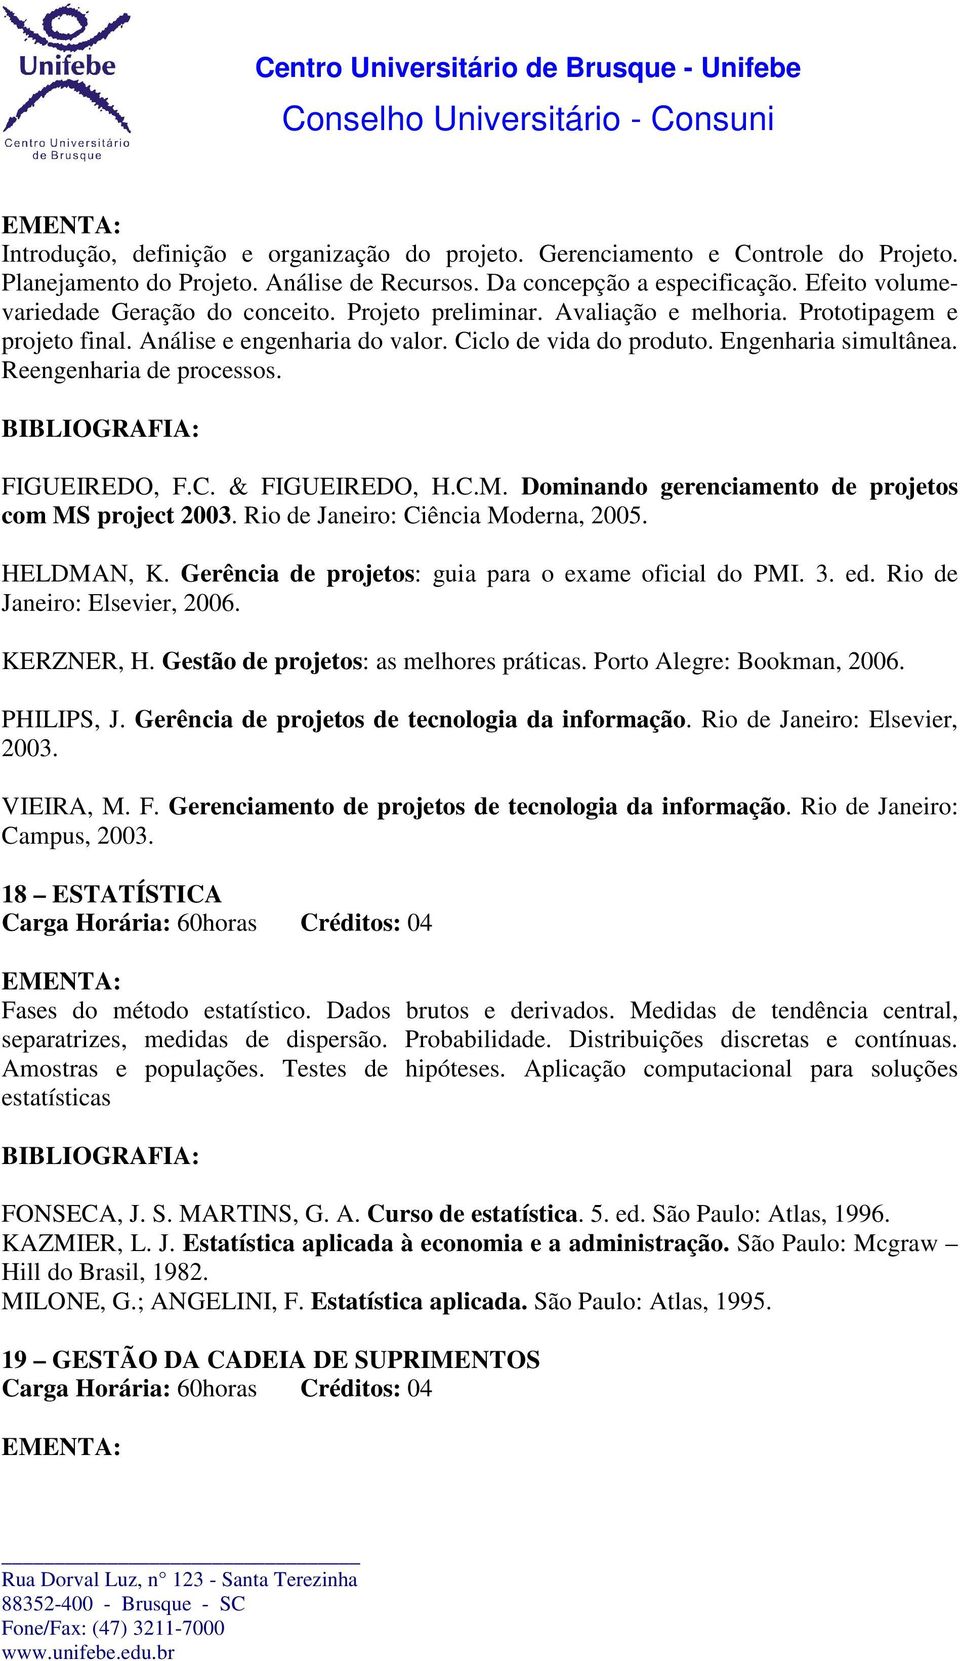 Reengenharia de processos. FIGUEIREDO, F.C. & FIGUEIREDO, H.C.M. Dominando gerenciamento de projetos com MS project 2003. Rio de Janeiro: Ciência Moderna, 2005. HELDMAN, K.